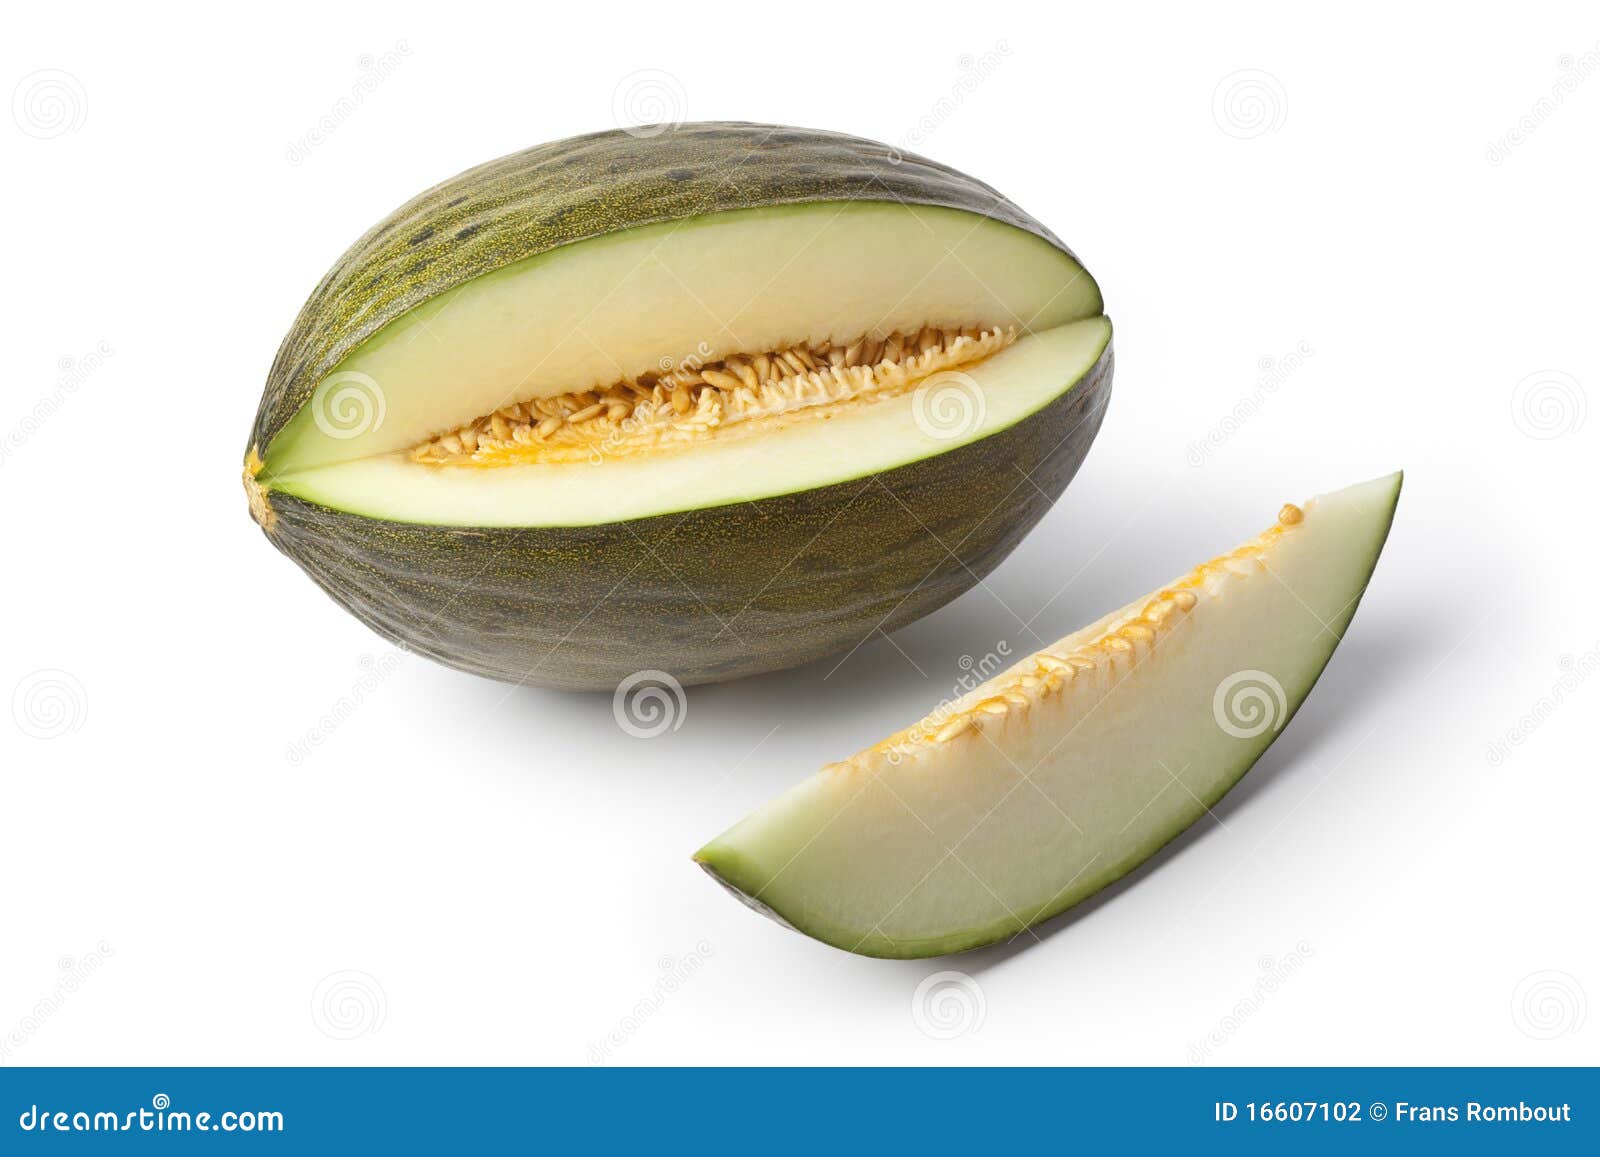 piel de sapo melon and a slice